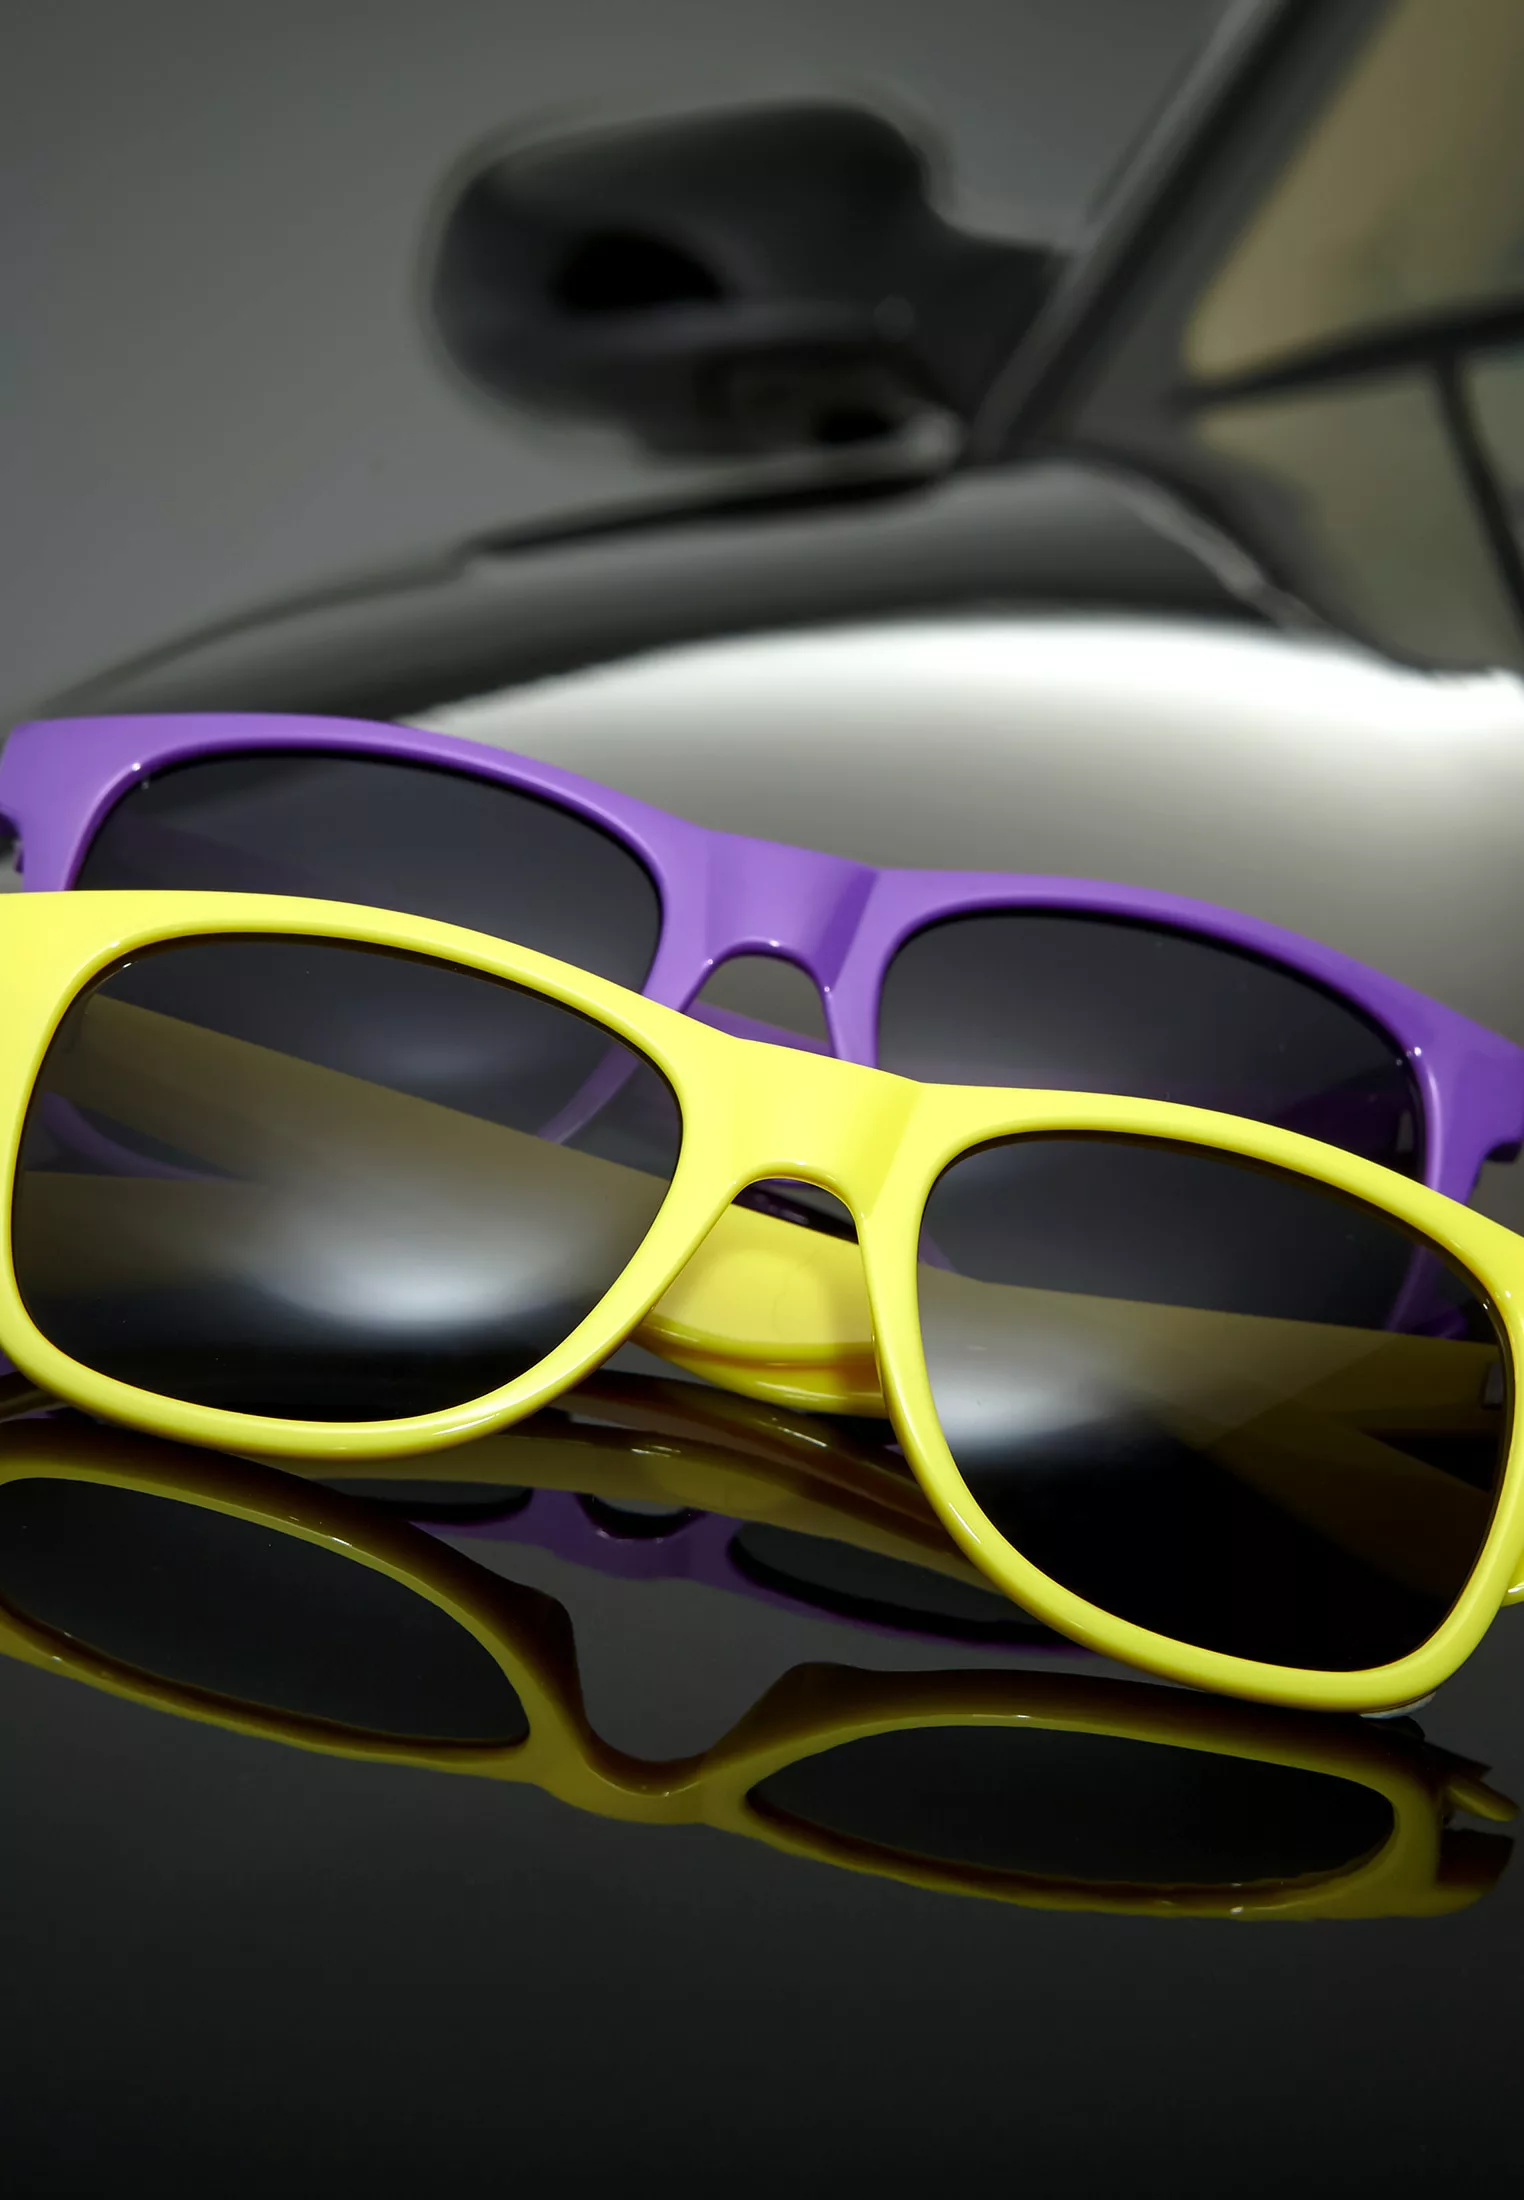 MSTRDS Sonnenbrille "Accessoires Groove Shades GStwo" günstig online kaufen